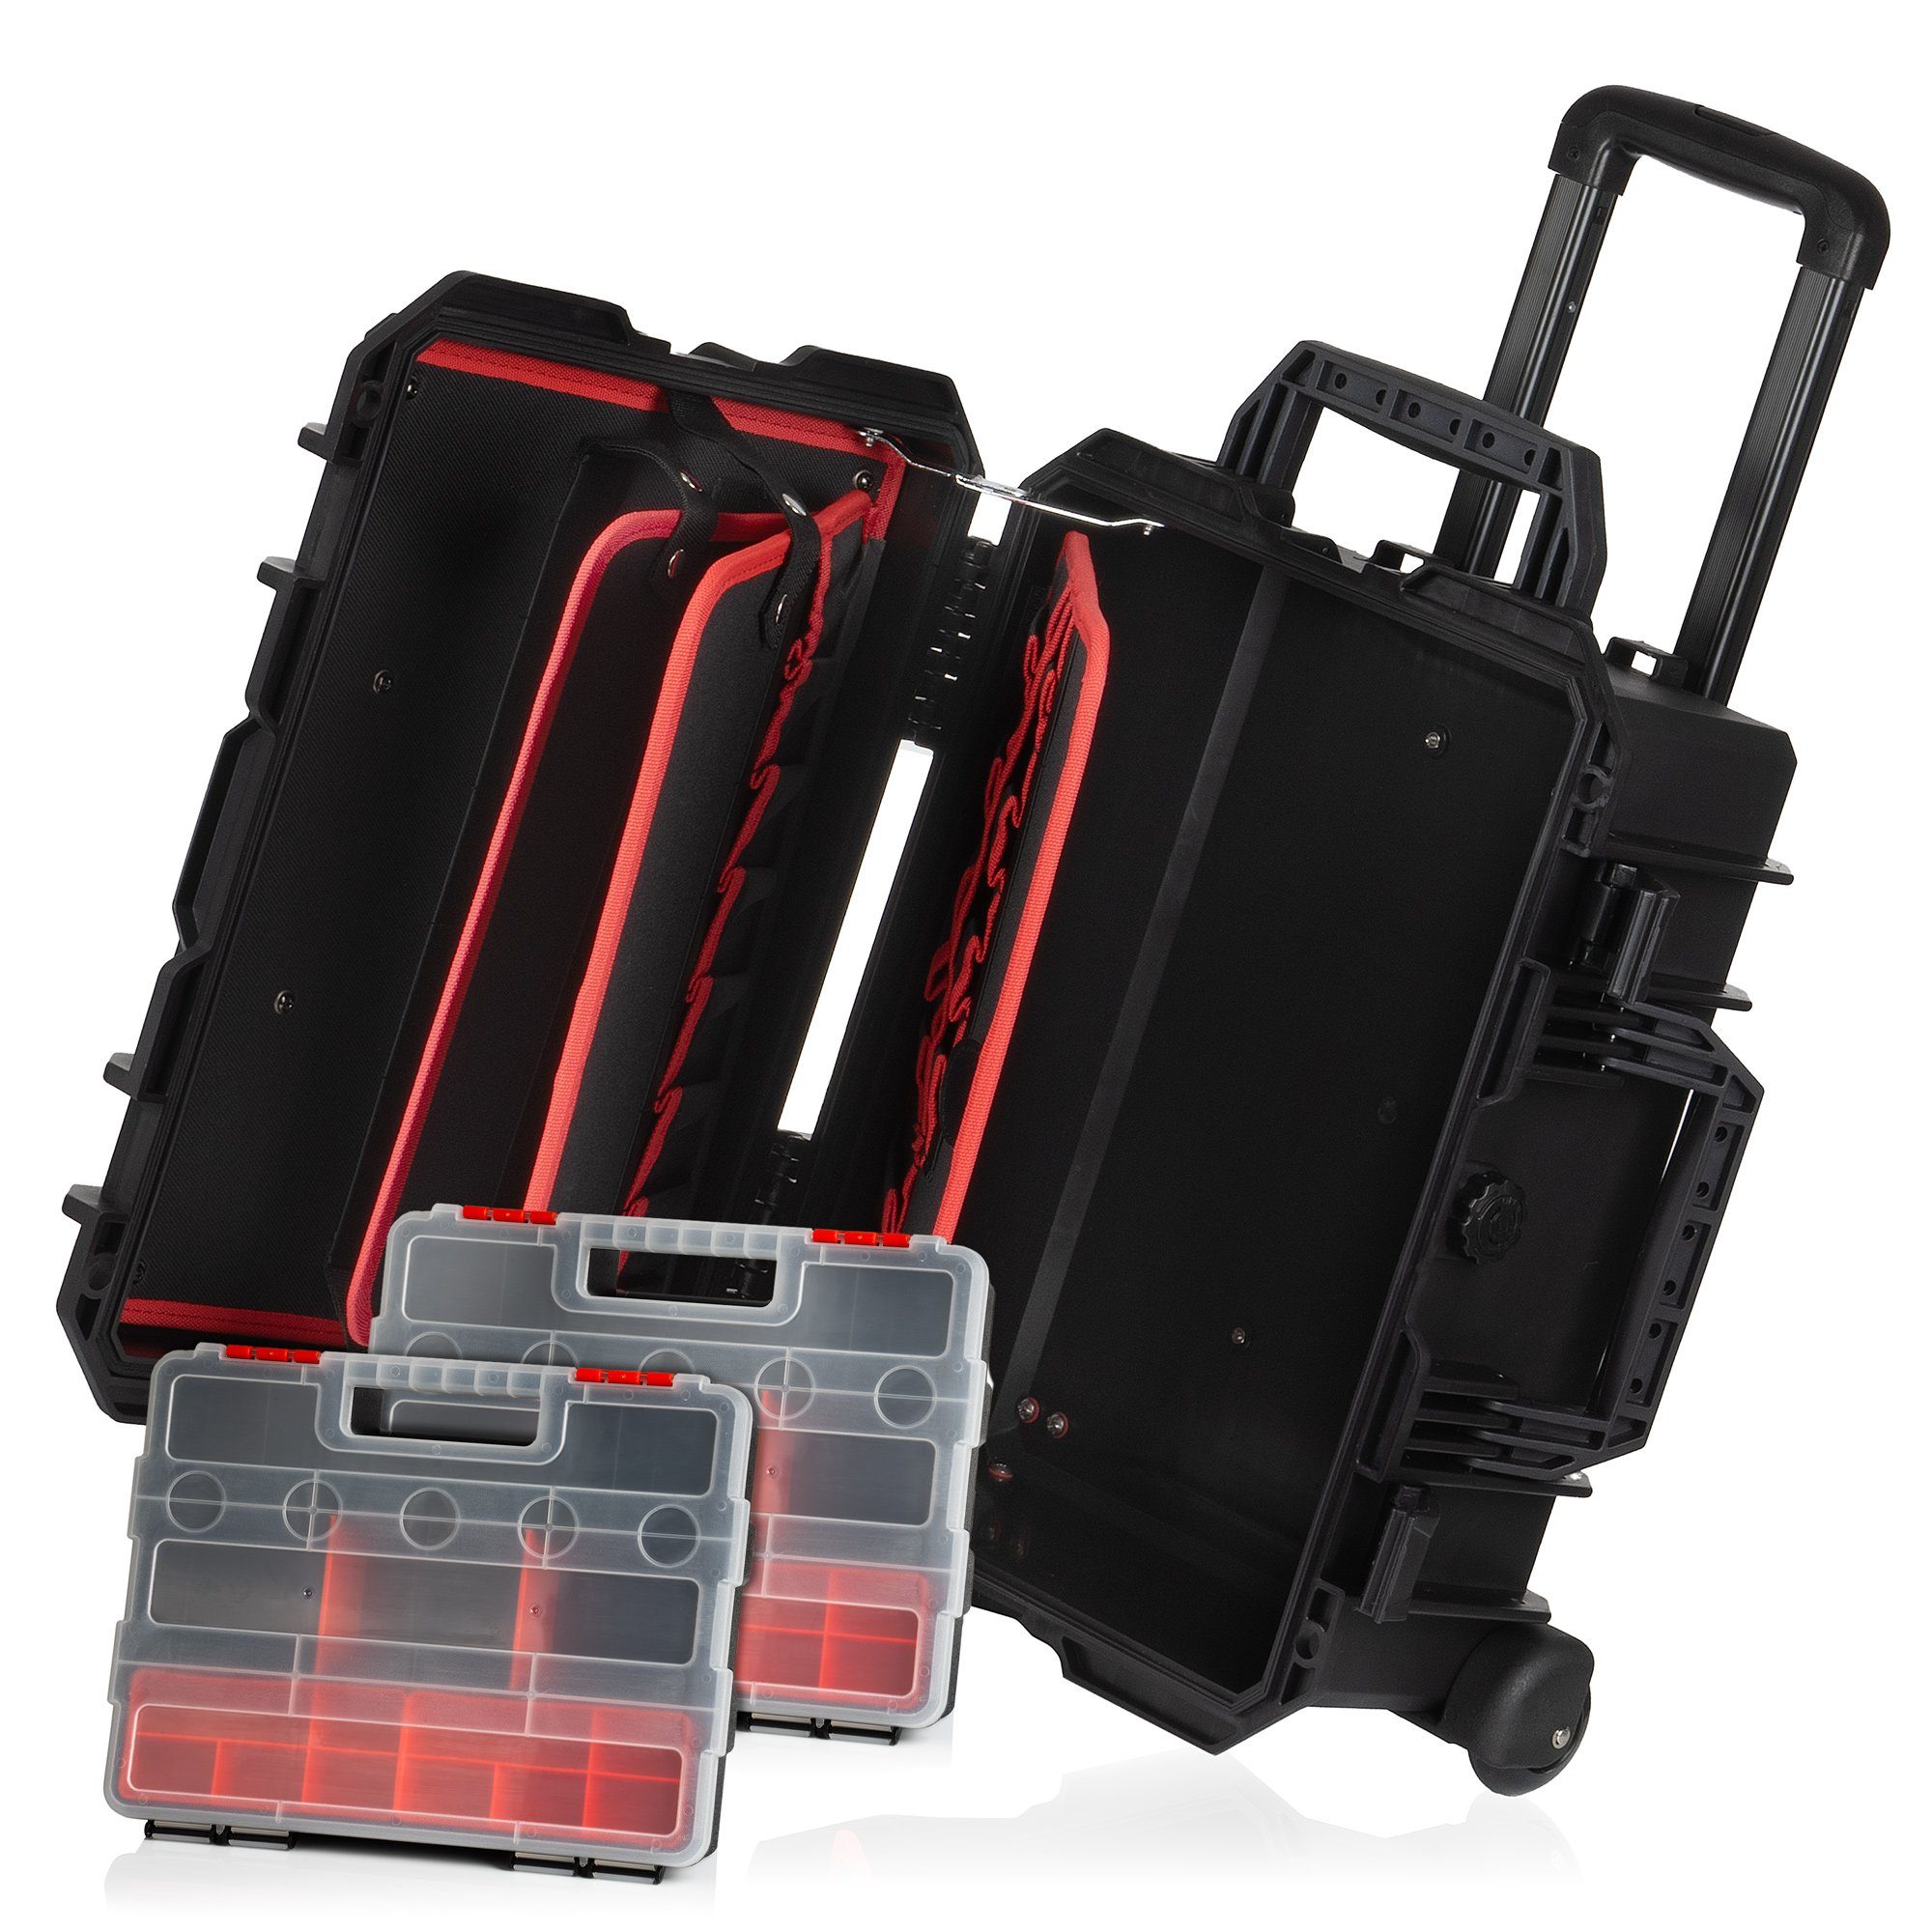 Zelsius Werkzeugbox Transportkoffer 18 Liter Rollen, mit und Box Werkzeugtascheneinsatz